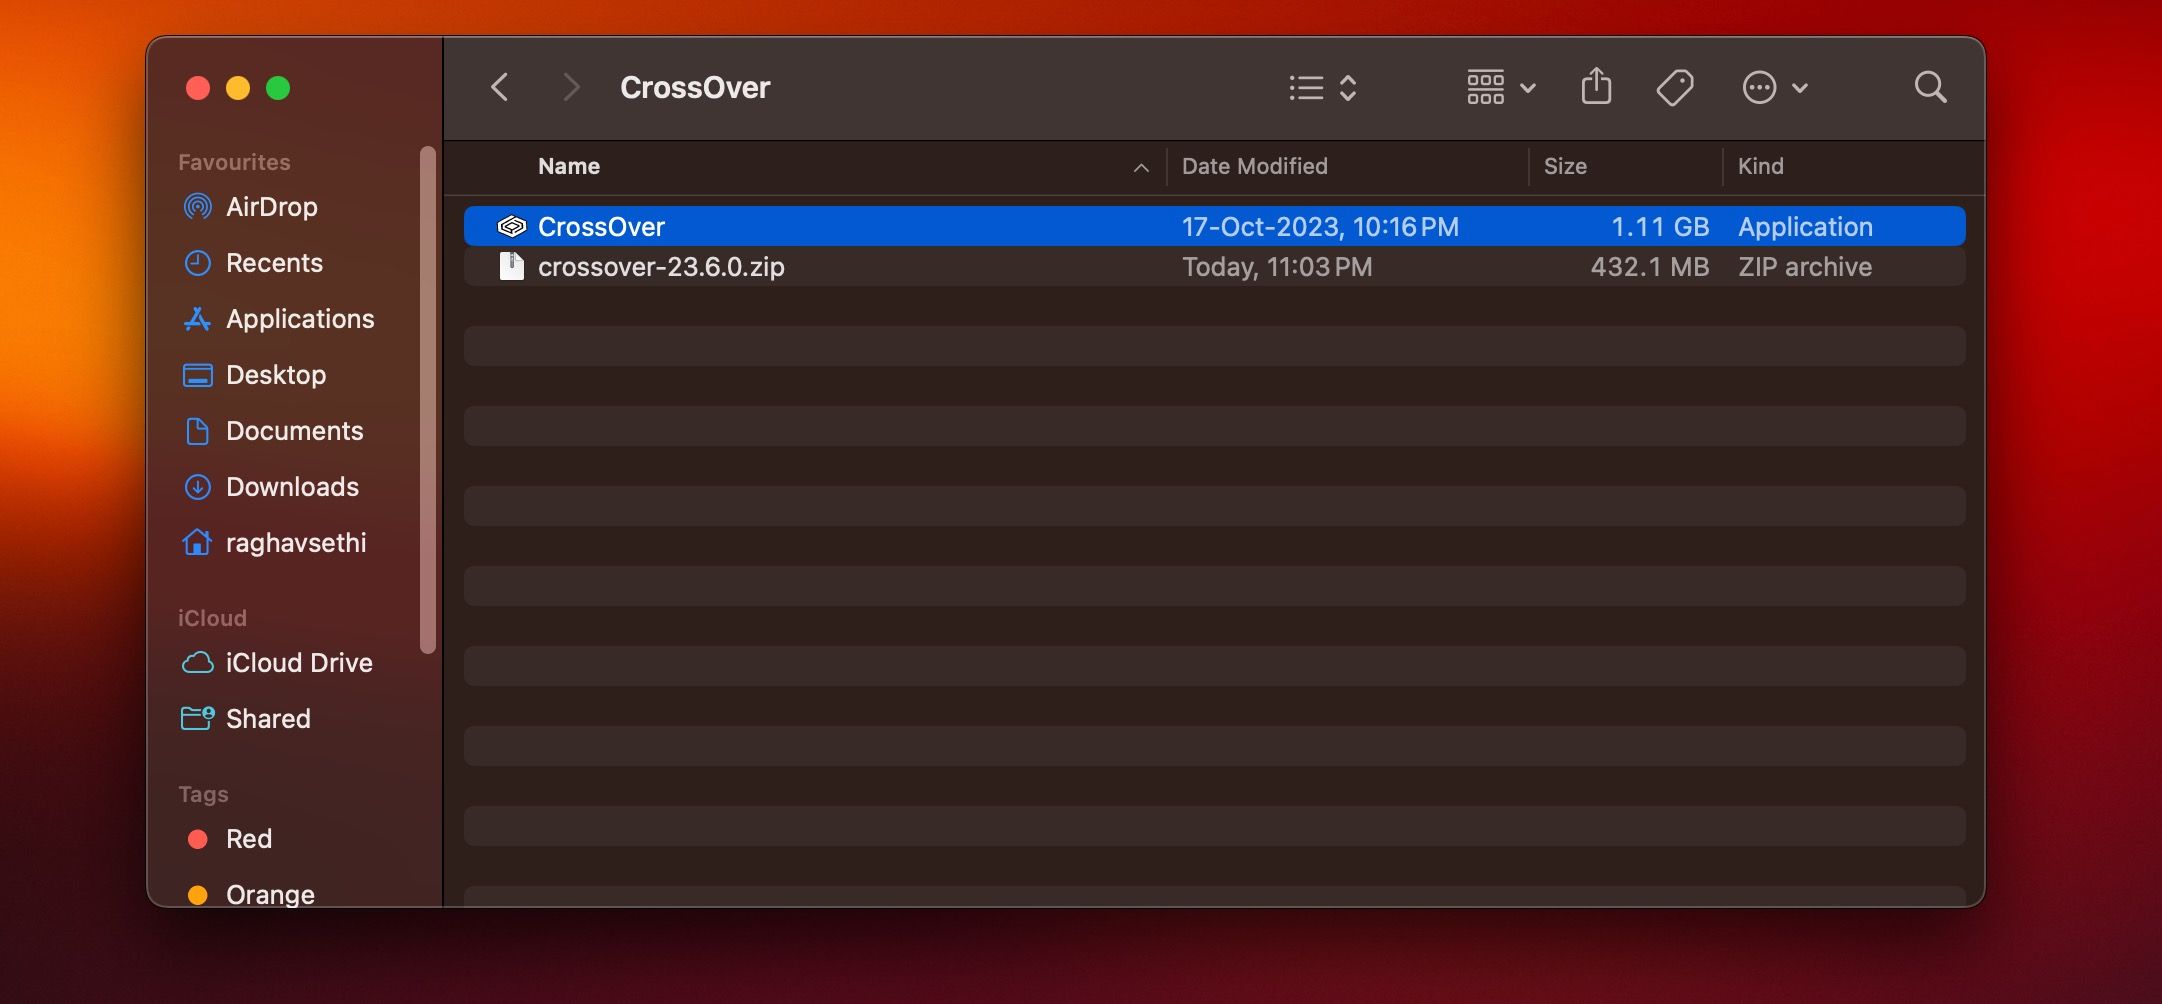 فایل های CrossOver Setup و Application در یک پوشه